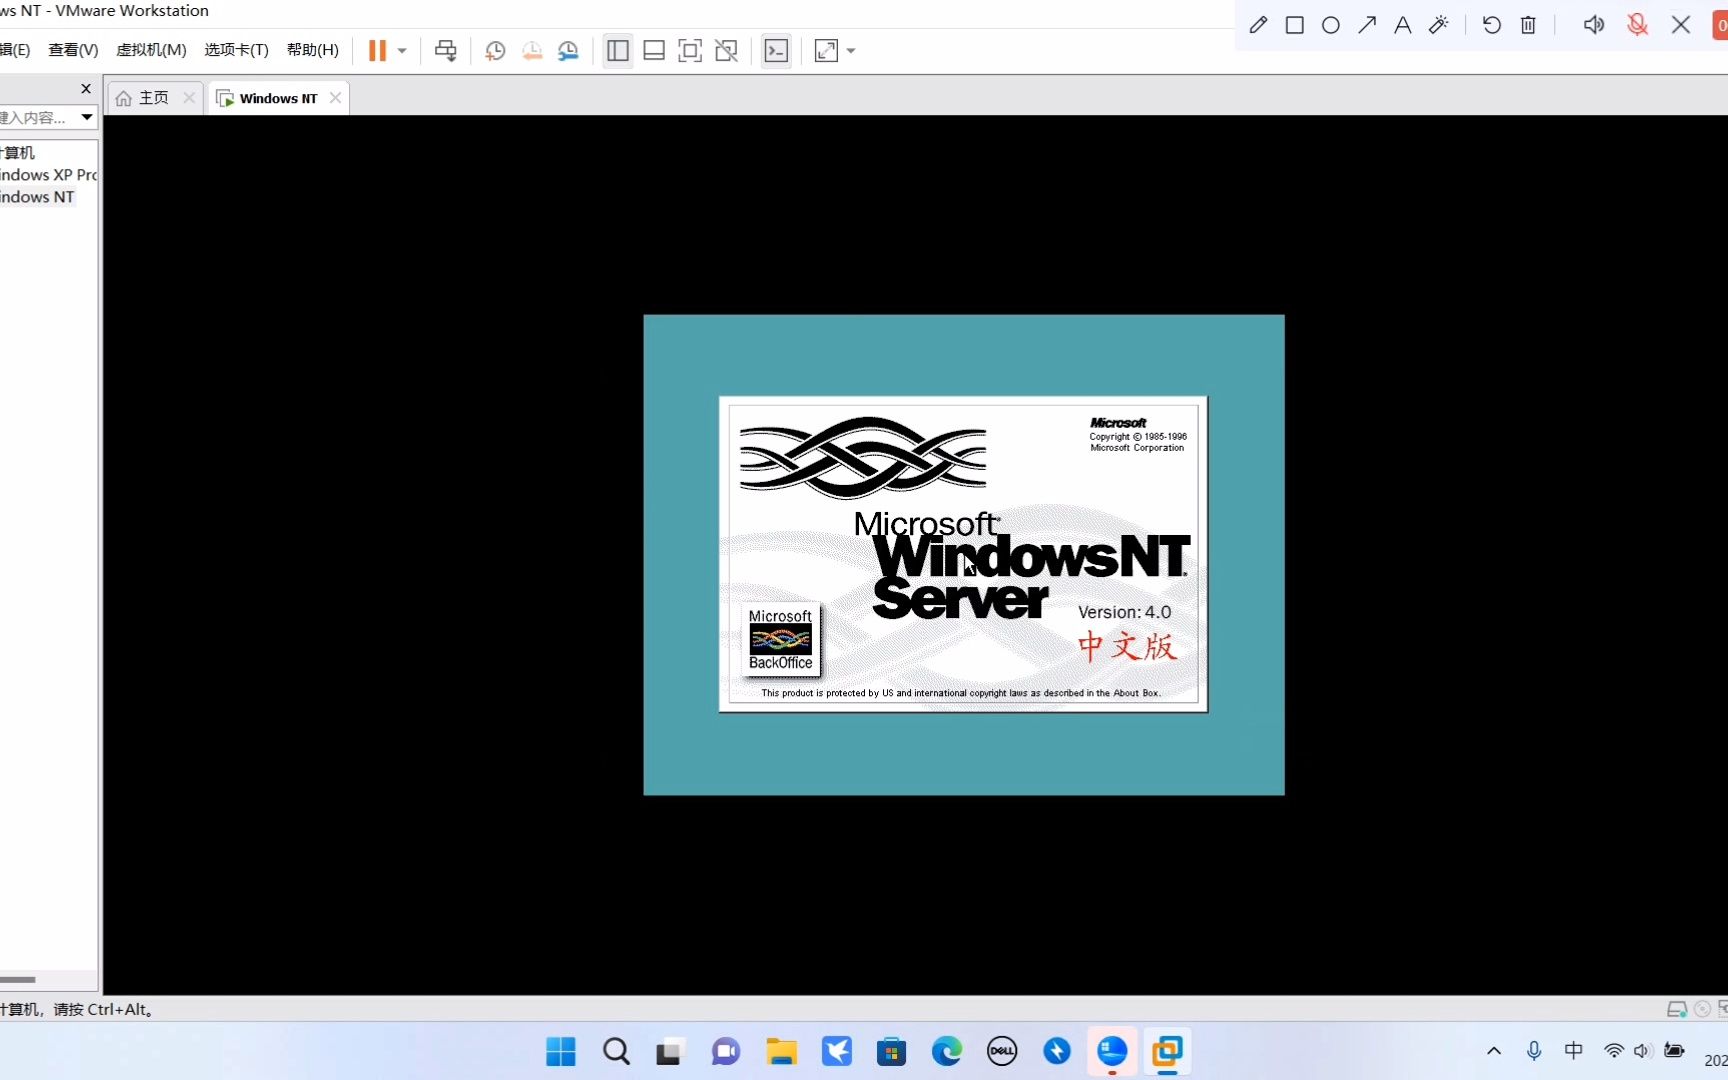 windowsnt4.0图片